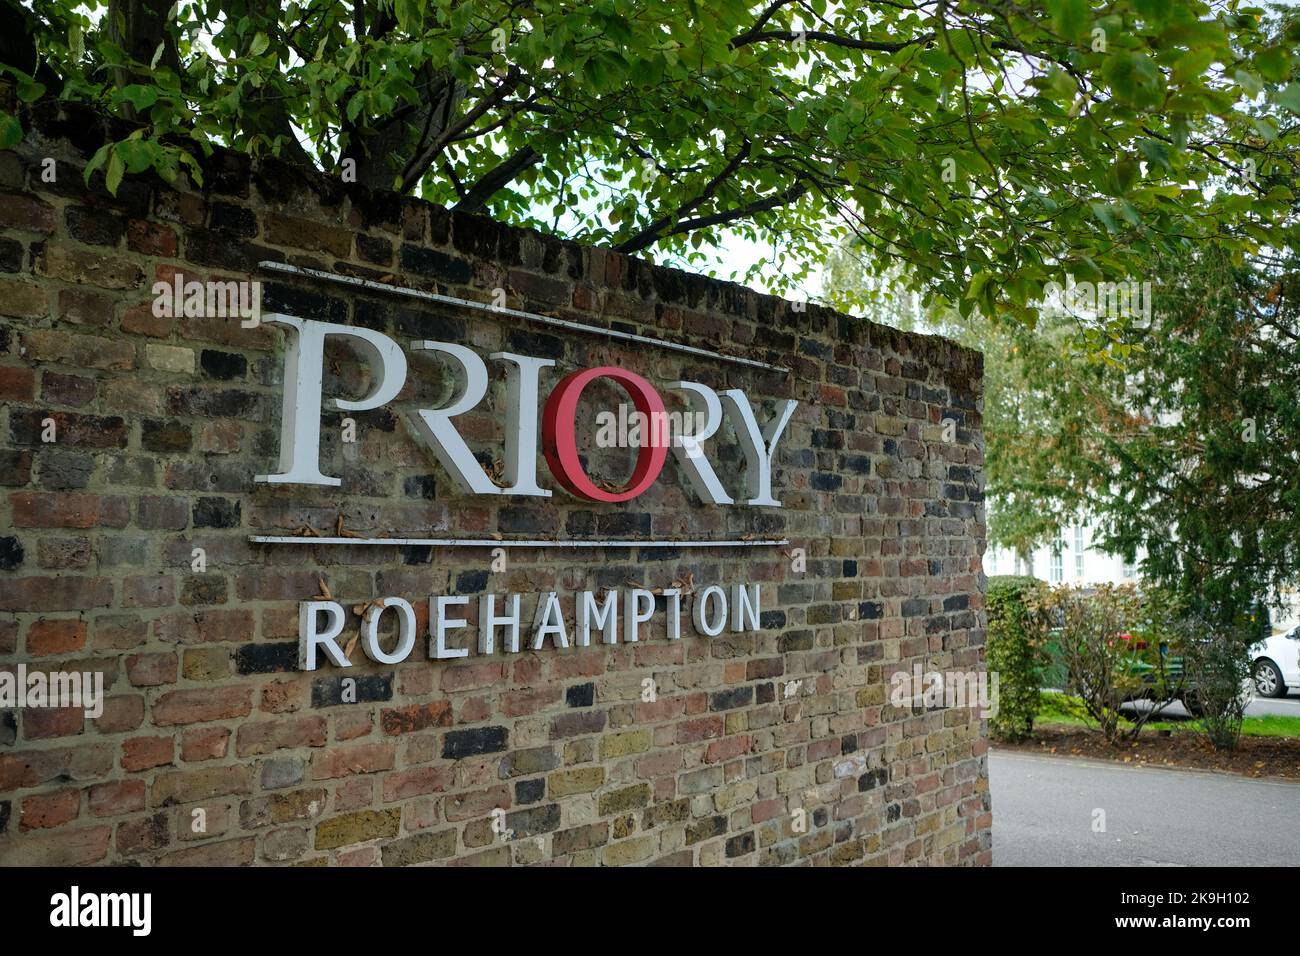 Londres- octobre 2022: Priory Roehampton AKA The Priory, une clinique de santé mentale et de réadaptation Banque D'Images